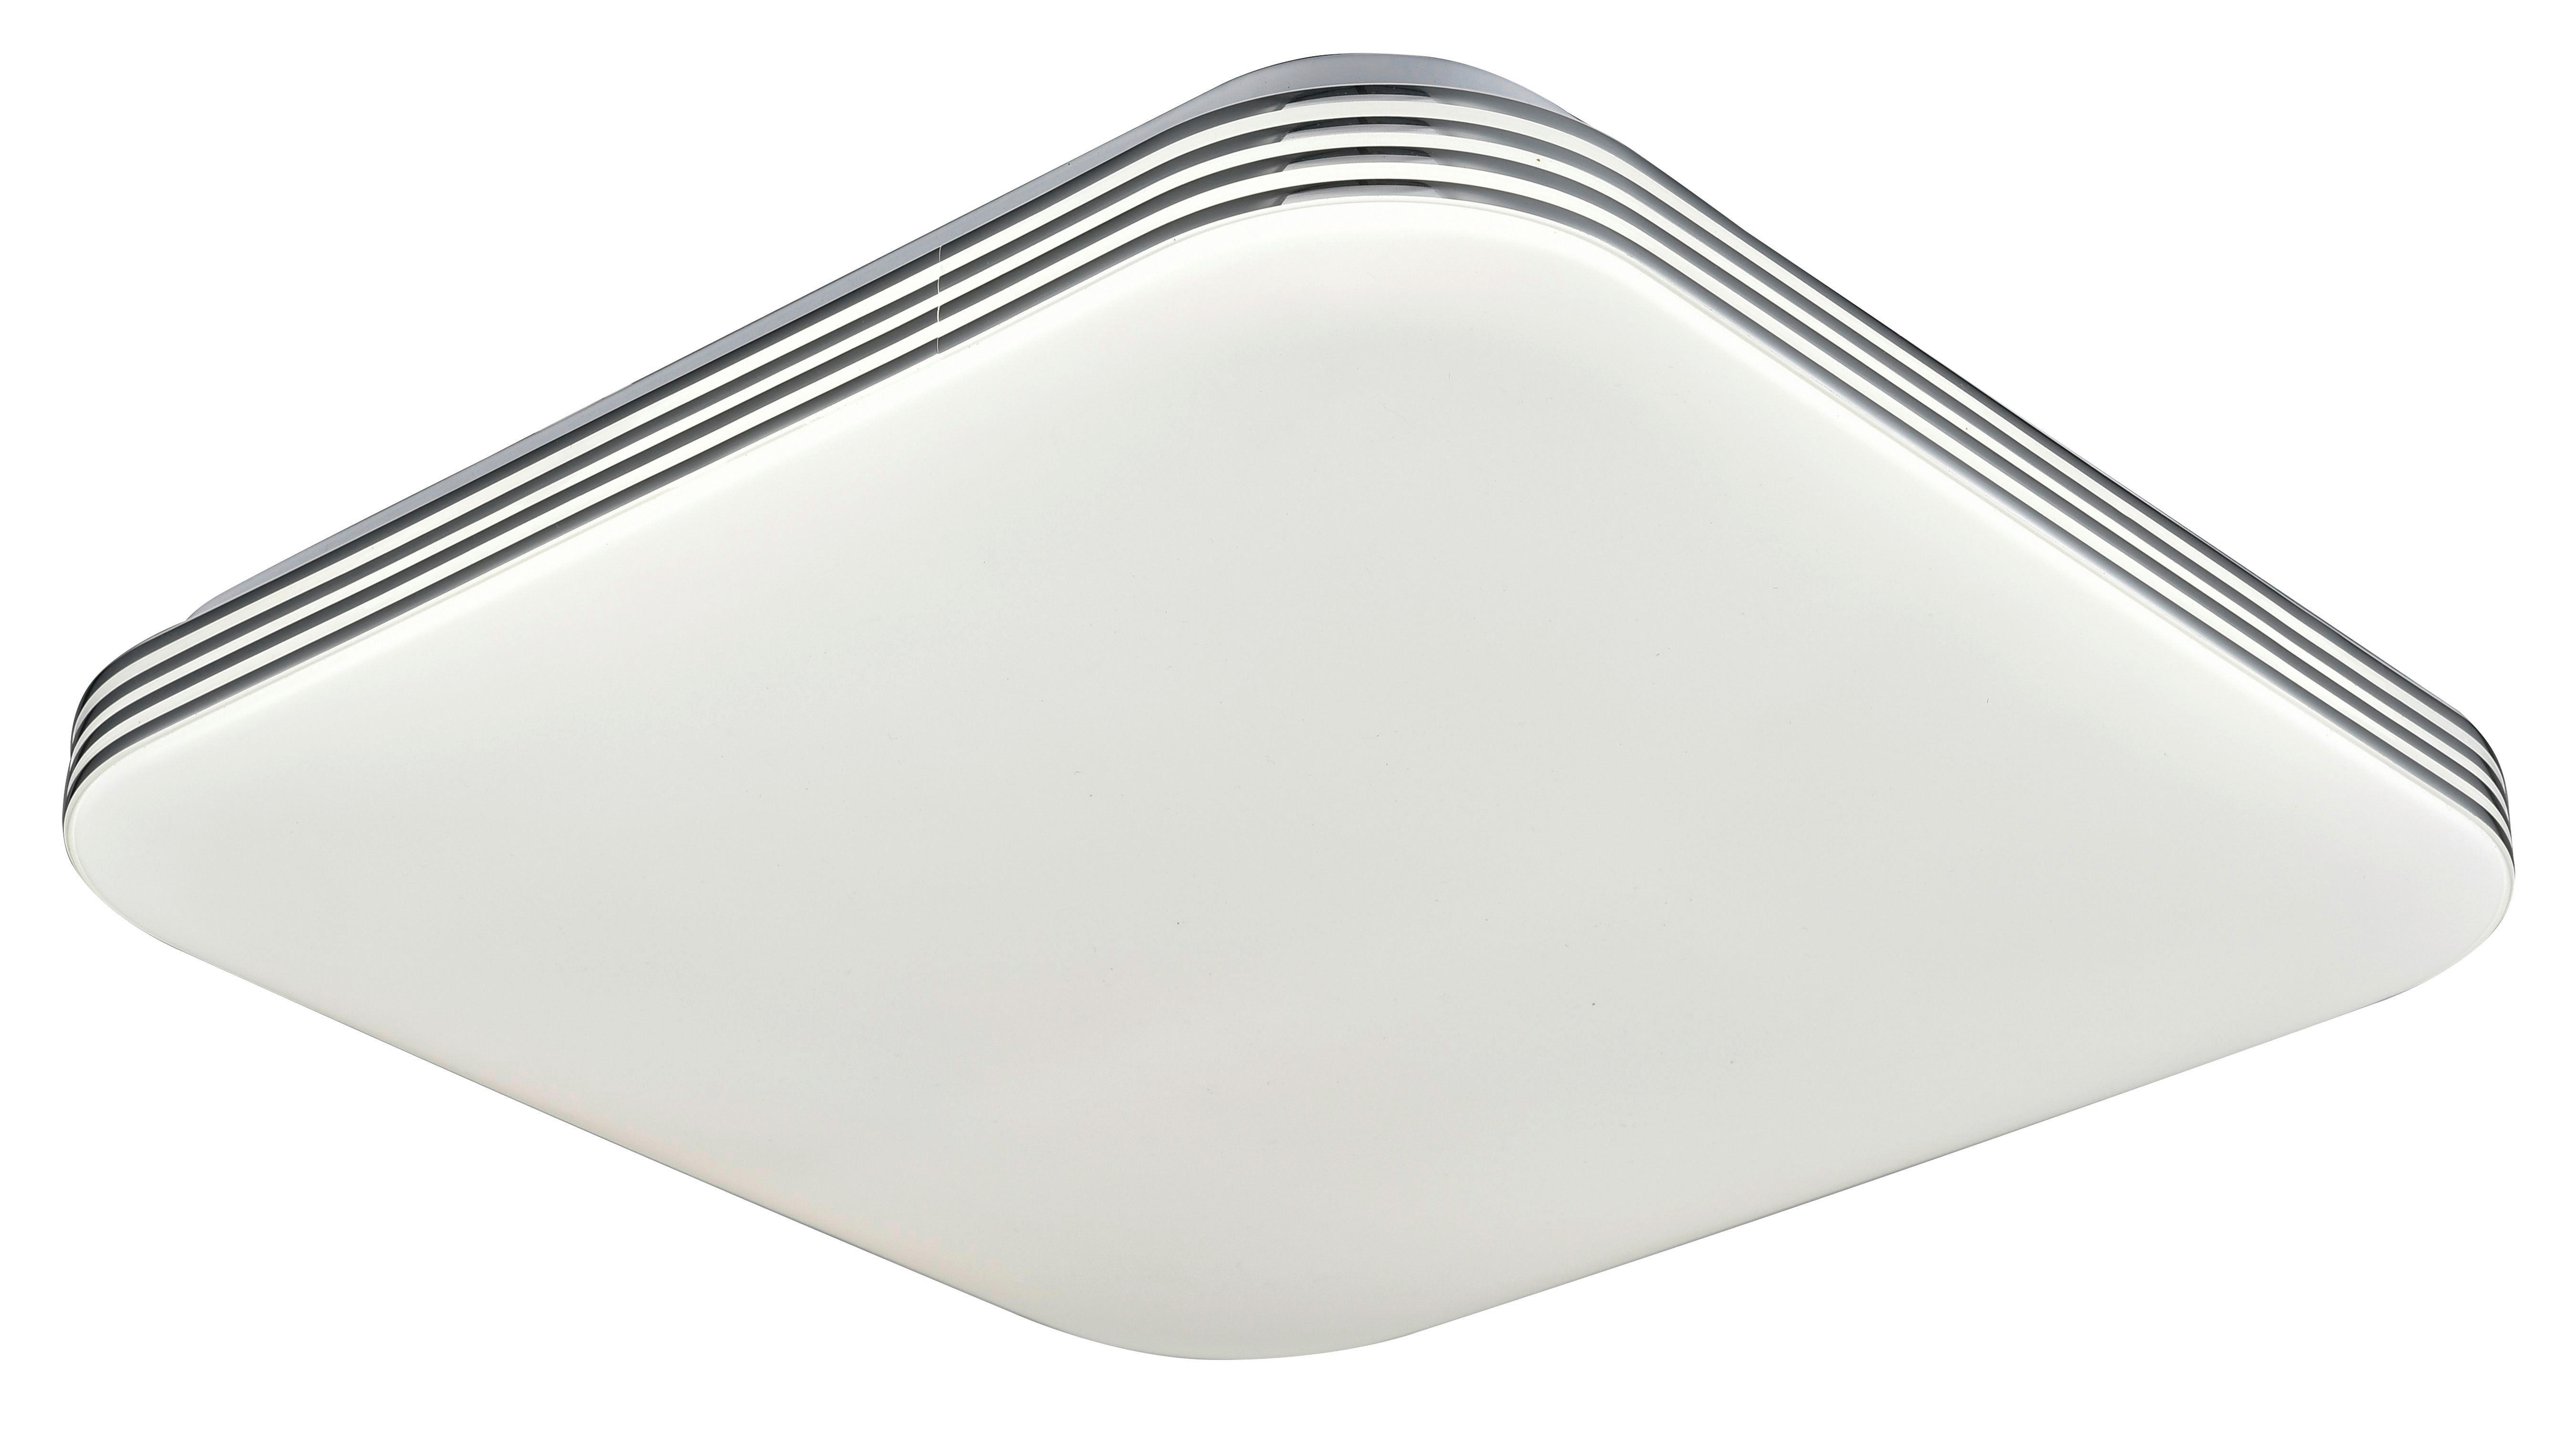 LED STROPNÁ LAMPA, 34/9 cm  - biela, Basics, kov/plast (34/9cm) - Novel